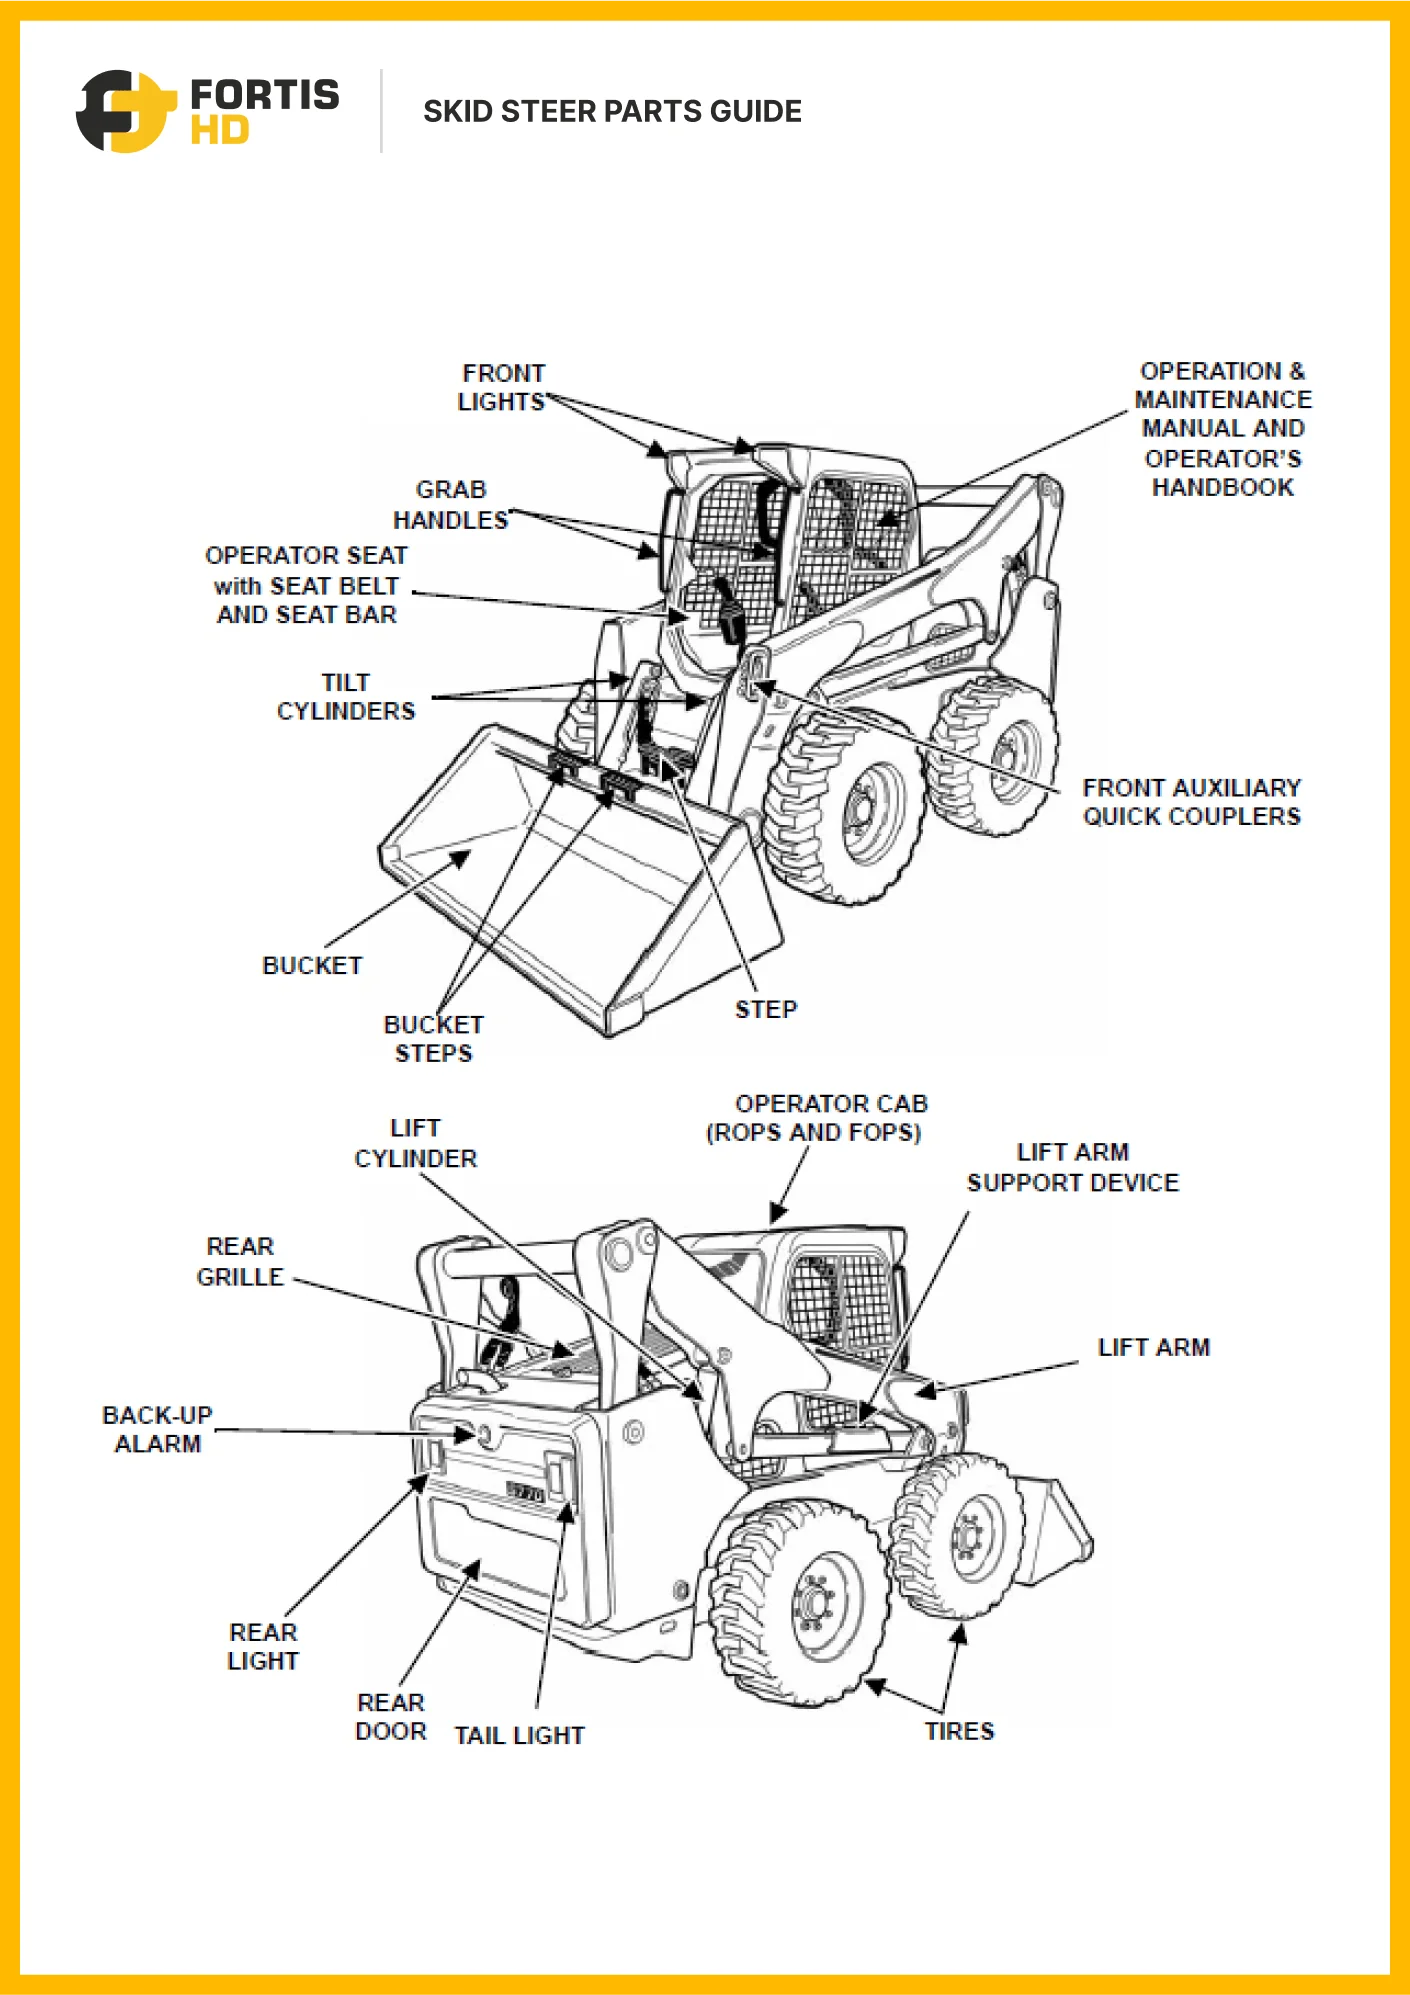 Skid steer parts diagram.